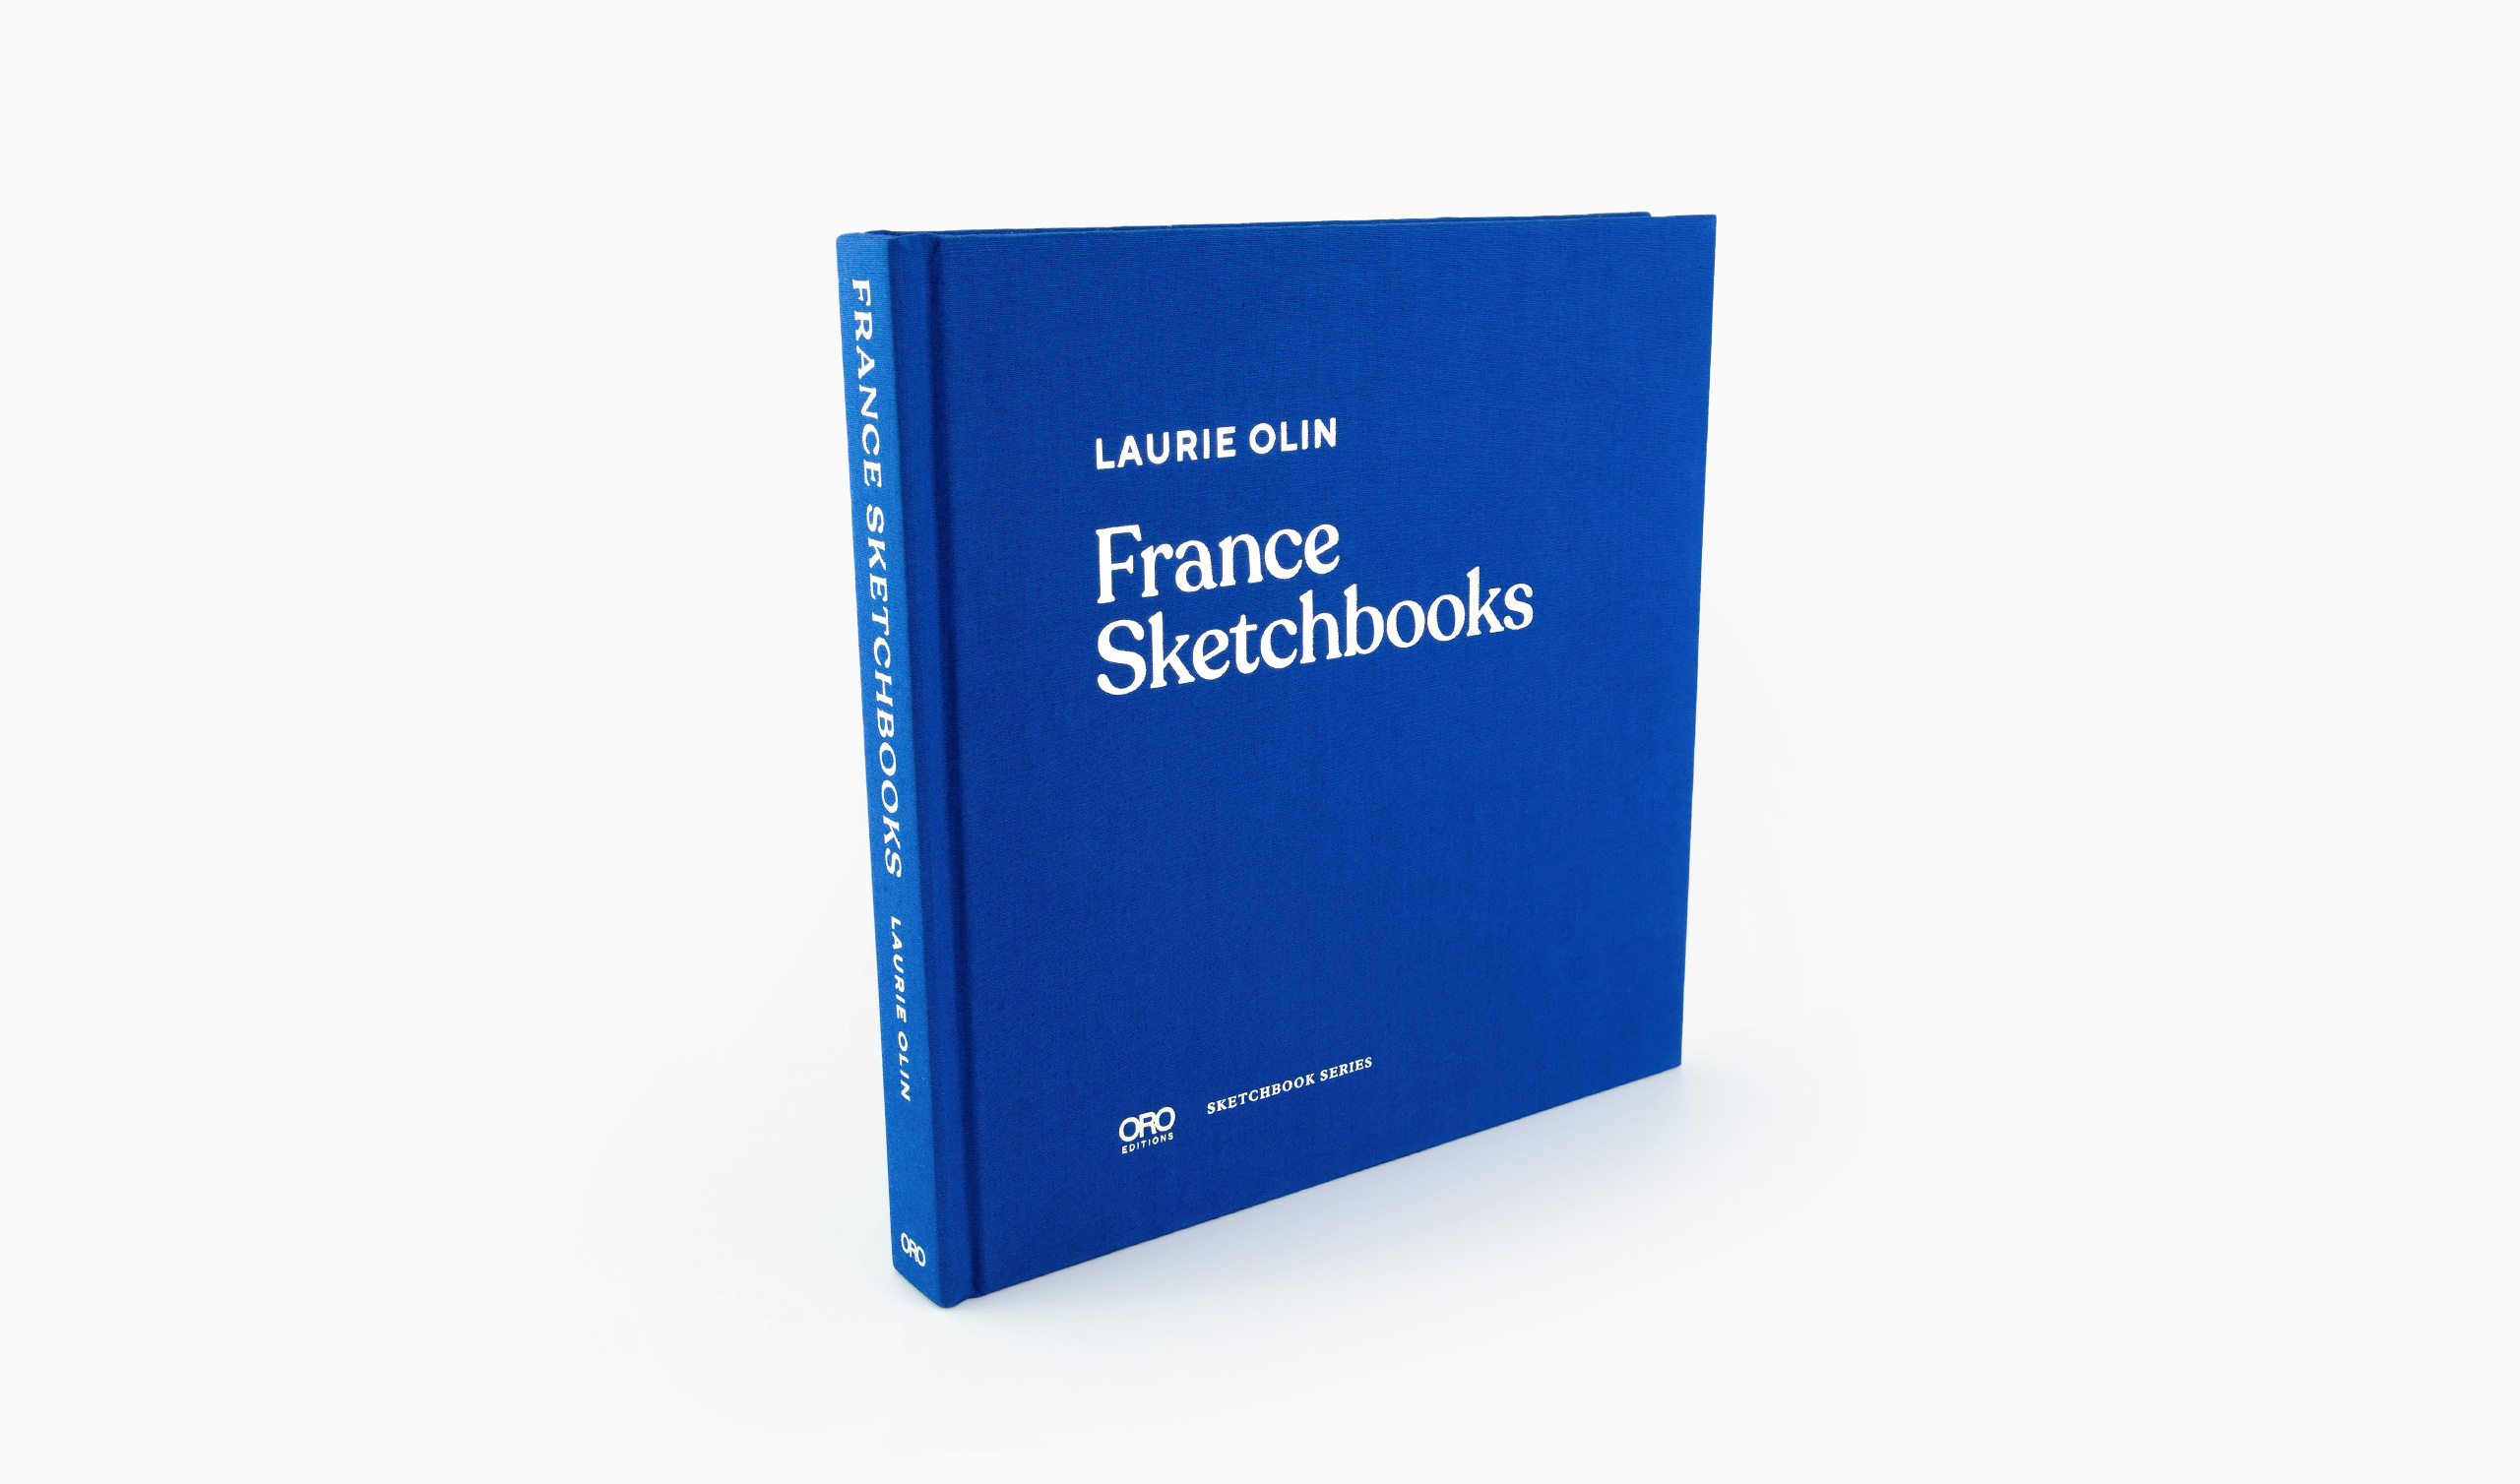 France Sketchbooks